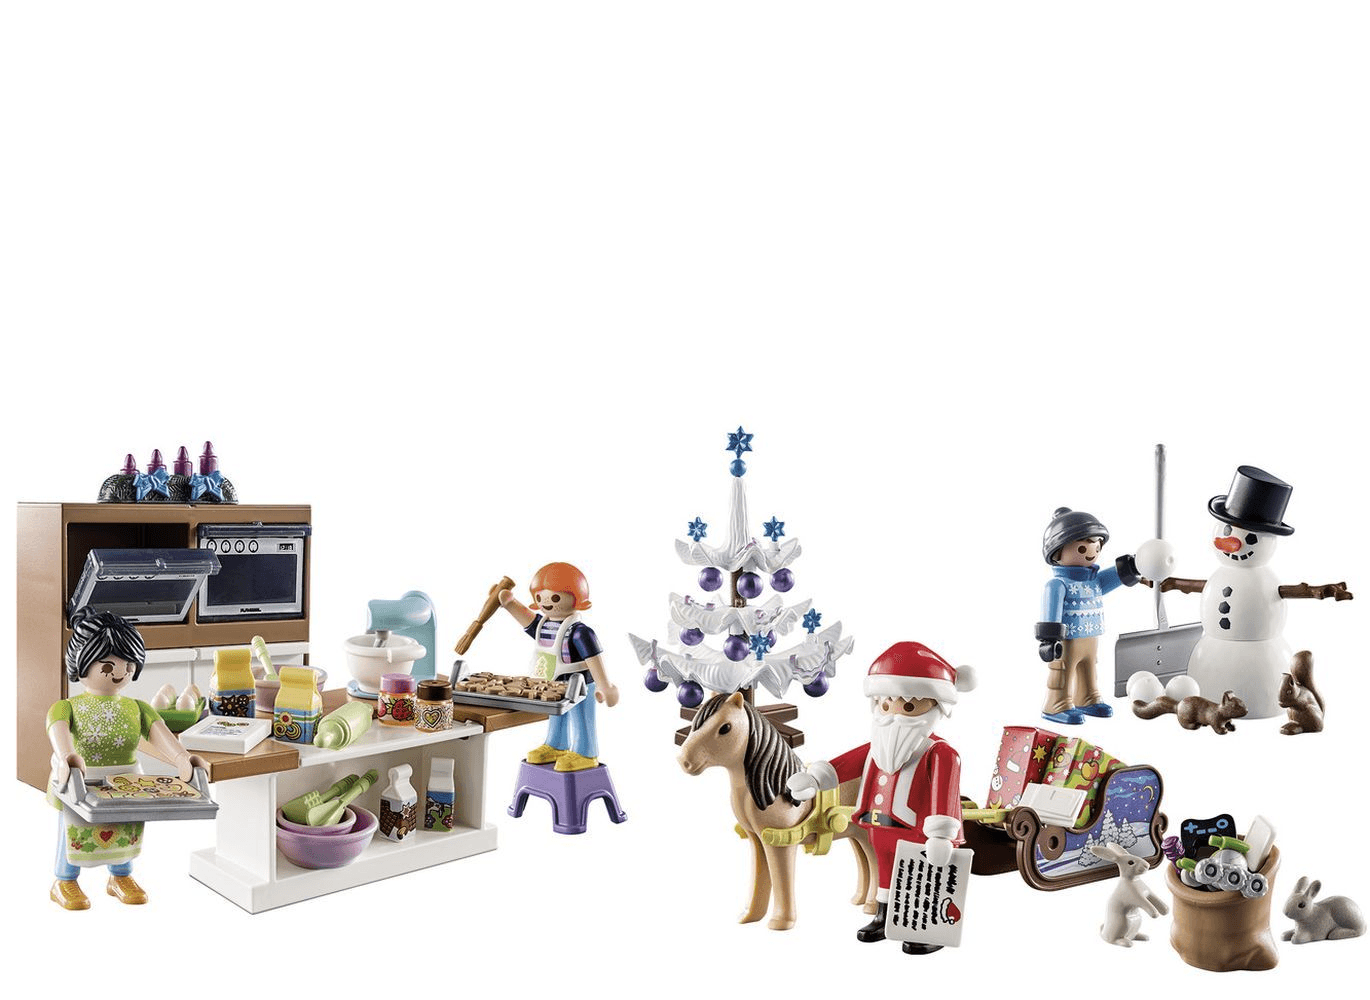 Playmobil - Christmas Bakery - Advent Calendar - The Card Vault